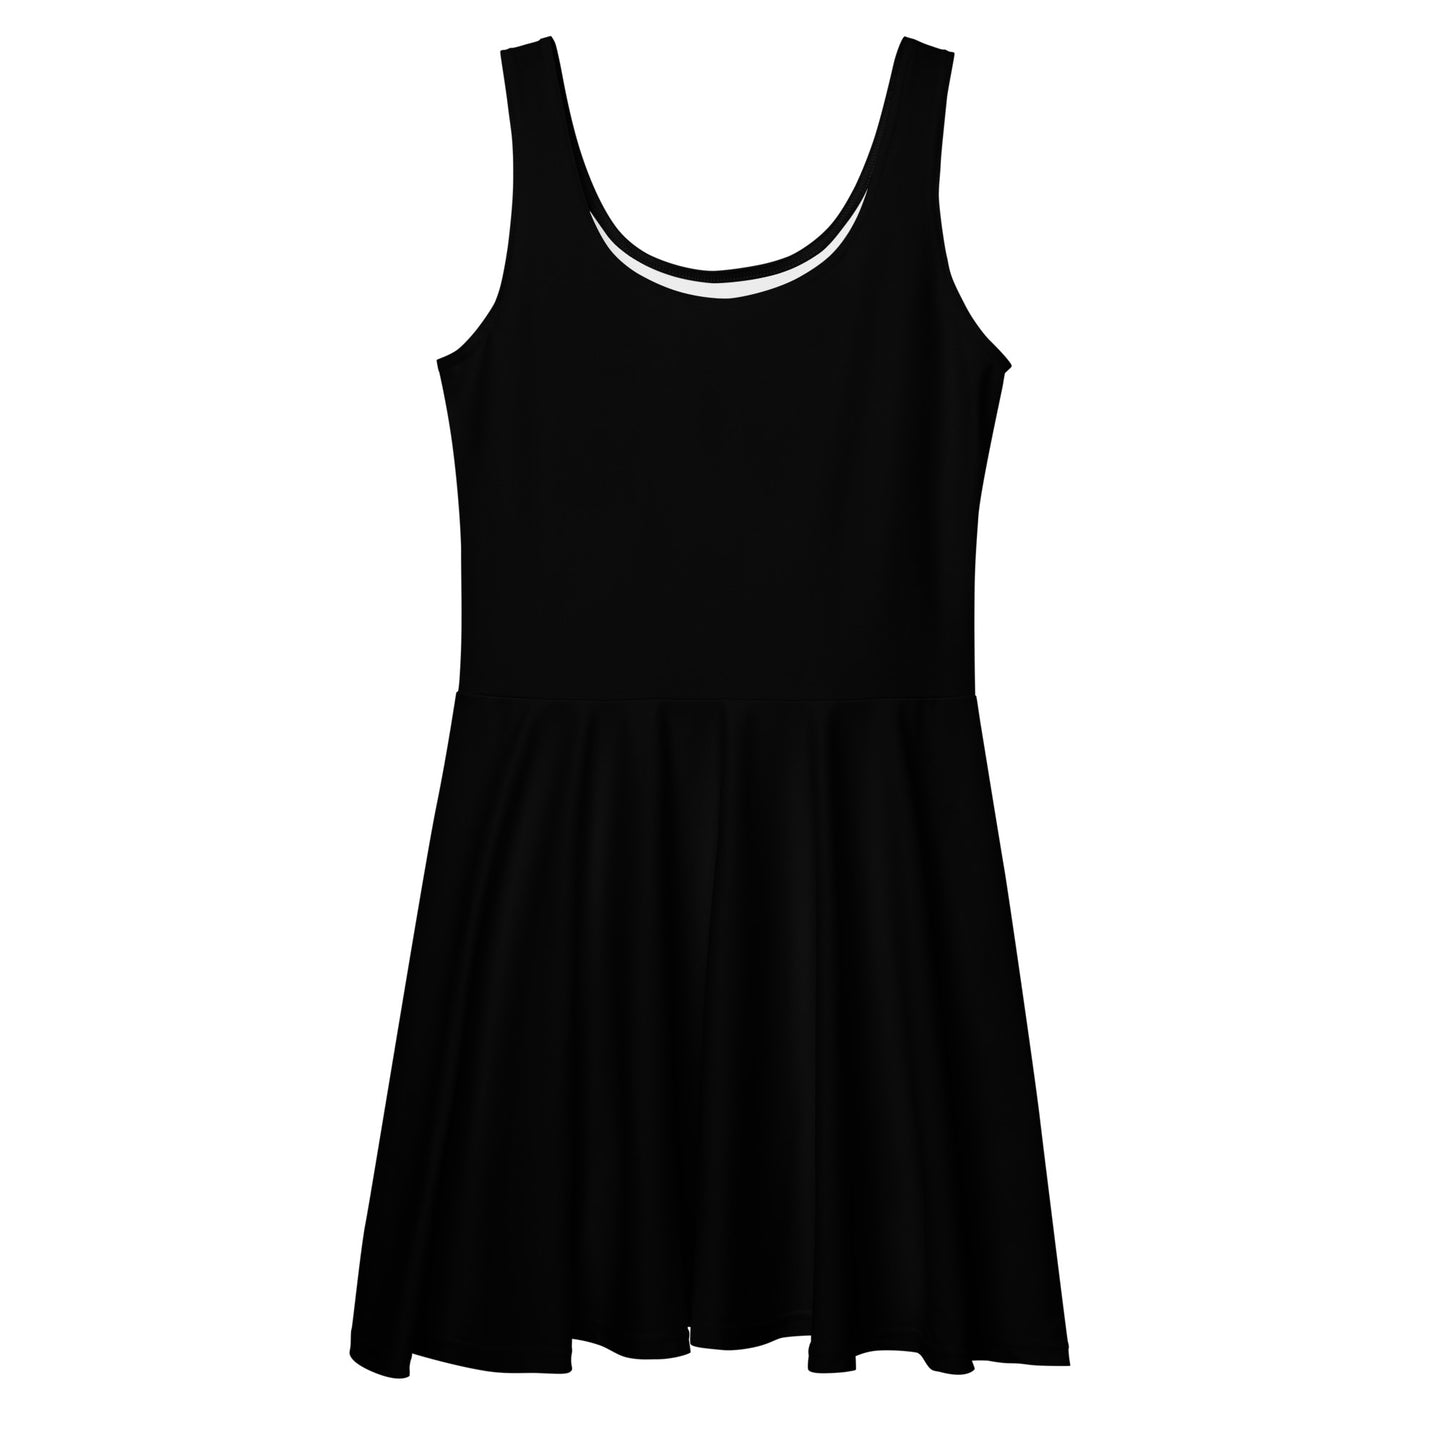 Black Skater Dress